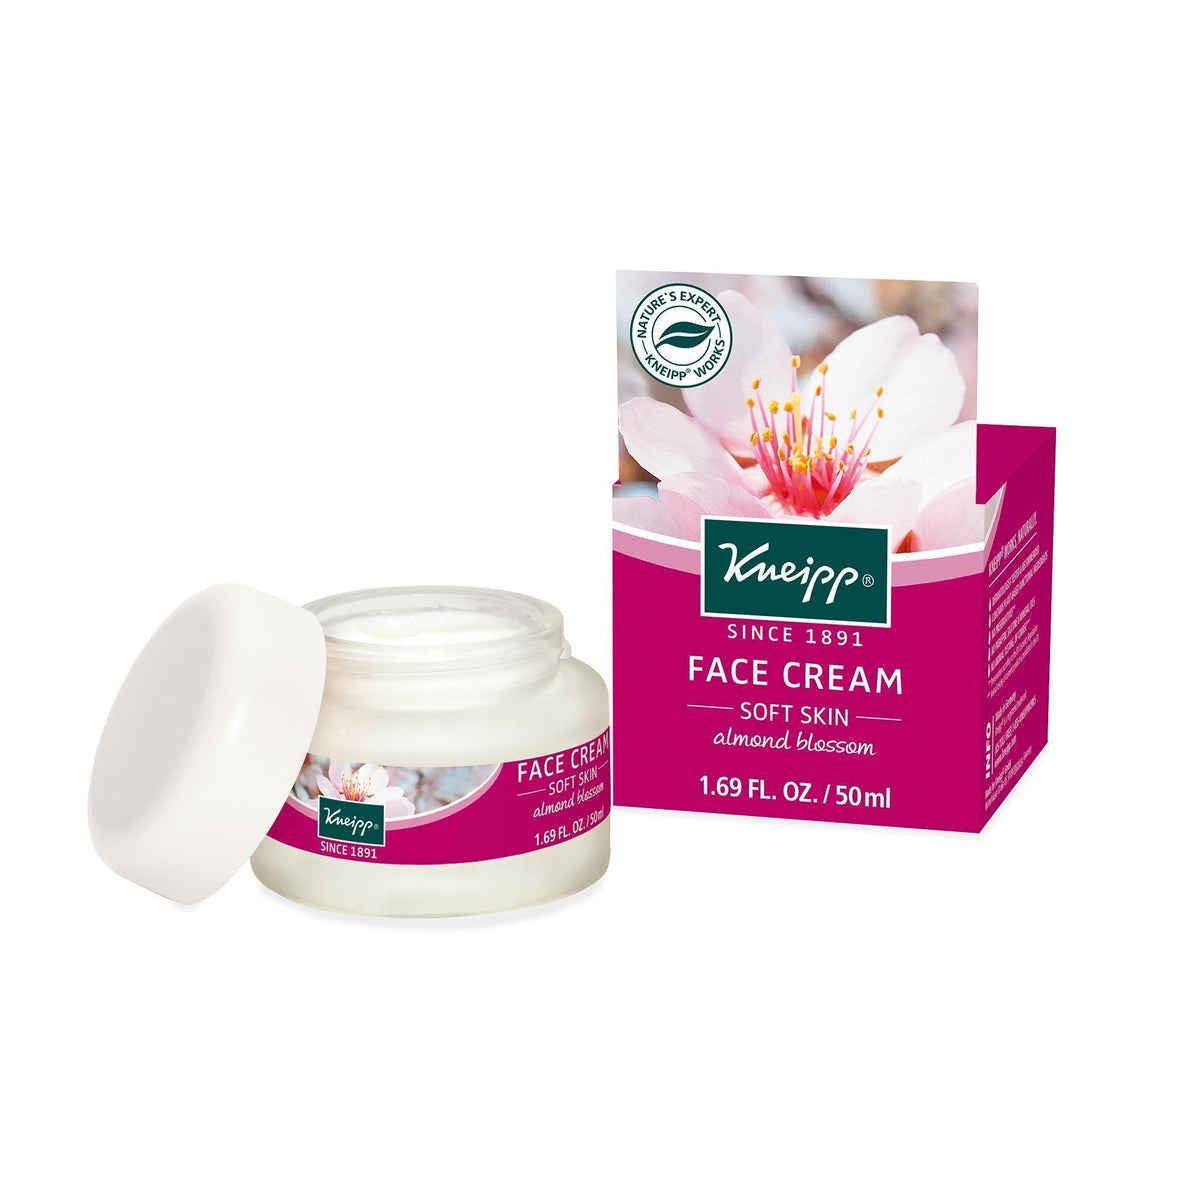 Kneipp Soft Skin Face Cream 1.69 Fl. Oz.